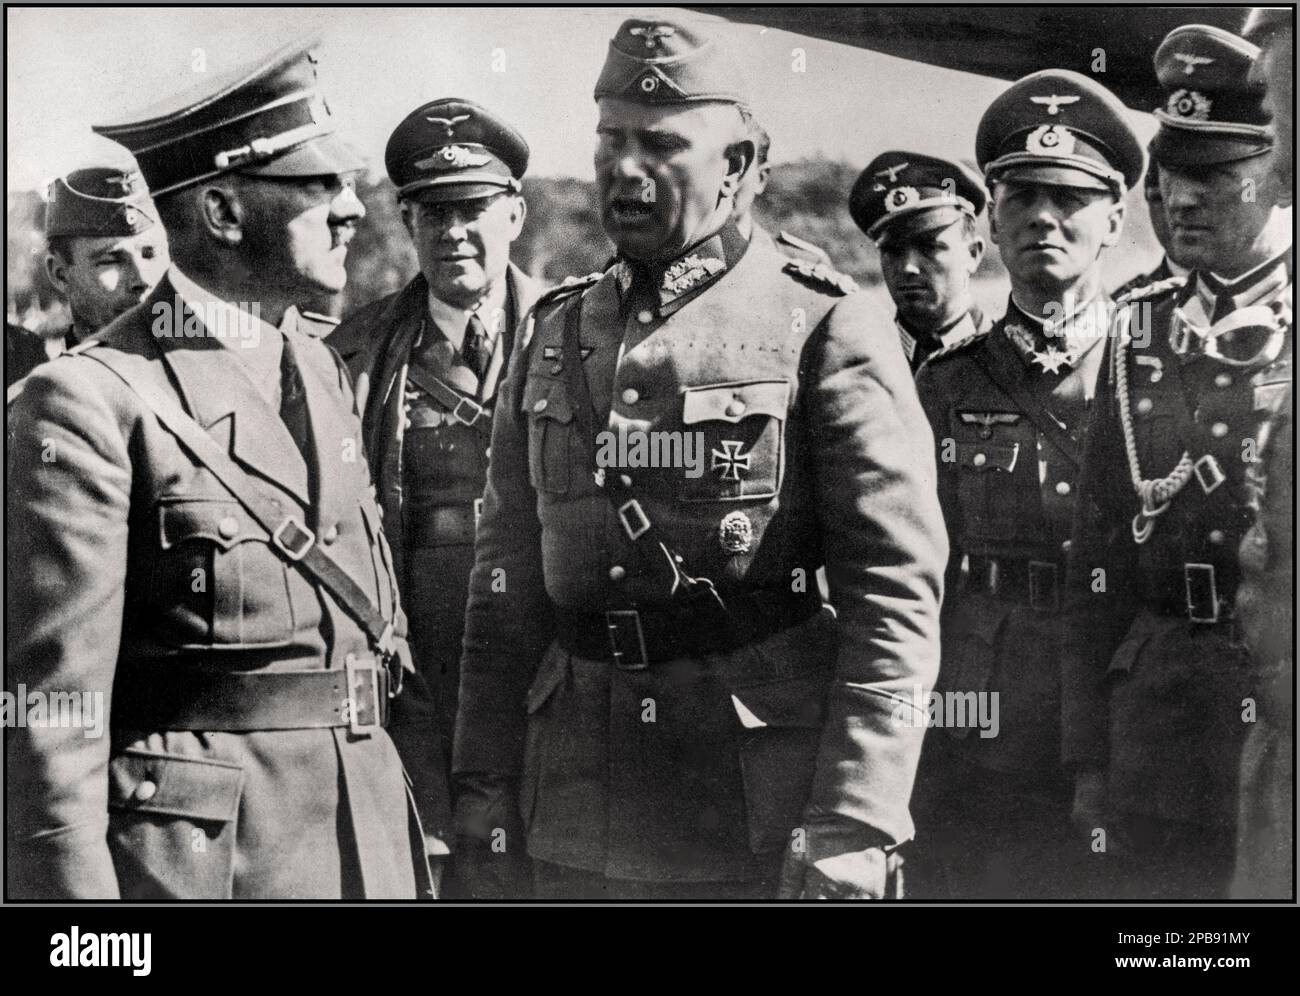 POLNISCHE NAZI-BESATZUNG Adolf Hitler im Gespräch mit Offizieren, einschließlich General Walter von Reichenau (Zentrum) und General Erwin Rommel (2. von rechts). Abbildungen von Erwin Rommel, Walter von Reichenau, Adolf Hitler Datum 13. September 1939 Stockfoto